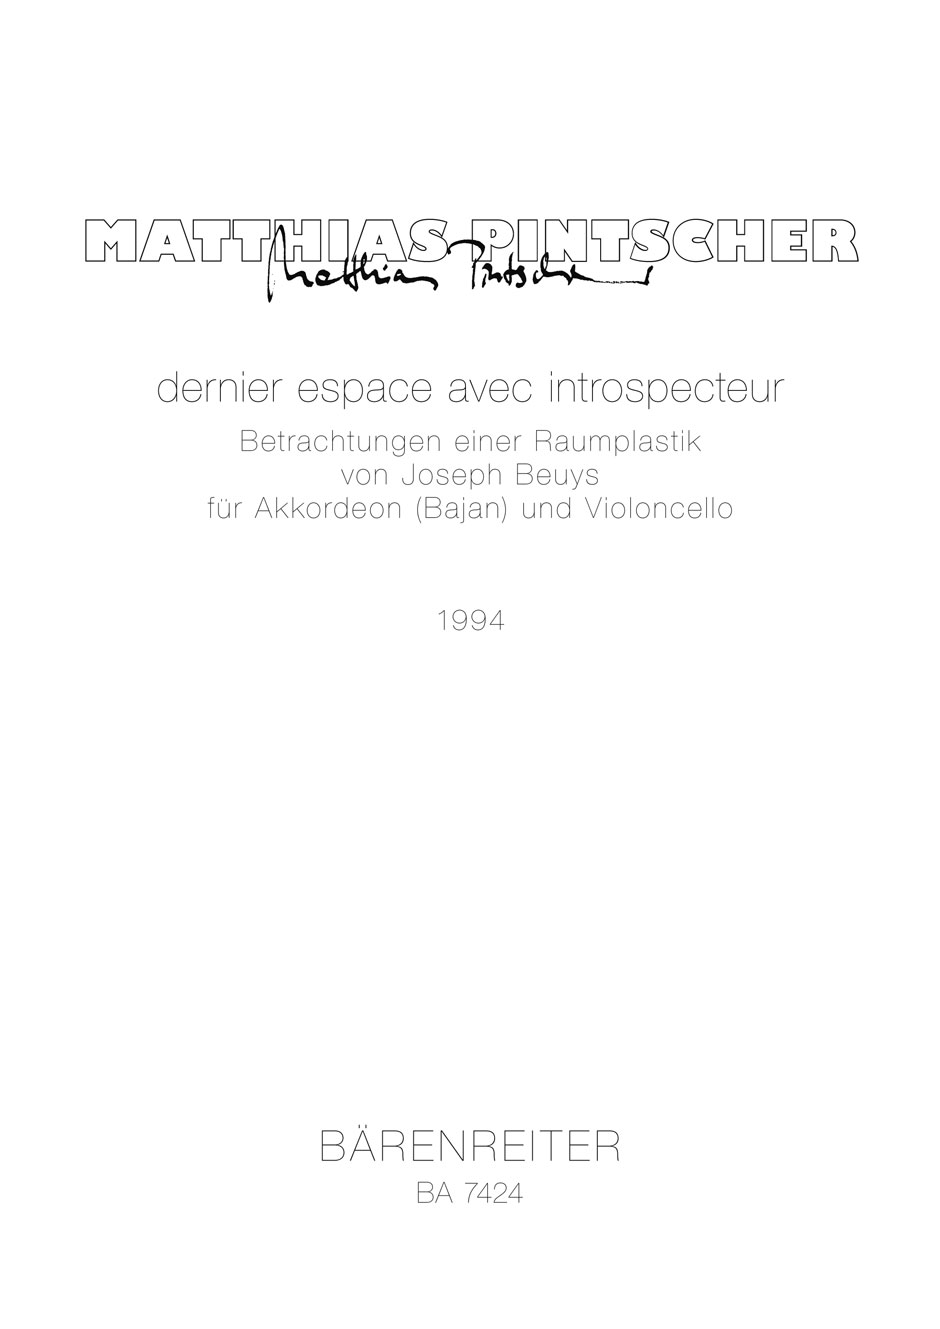 Matthias-Pintscher-Dernier-espace-avec-instrospect_0001.JPG